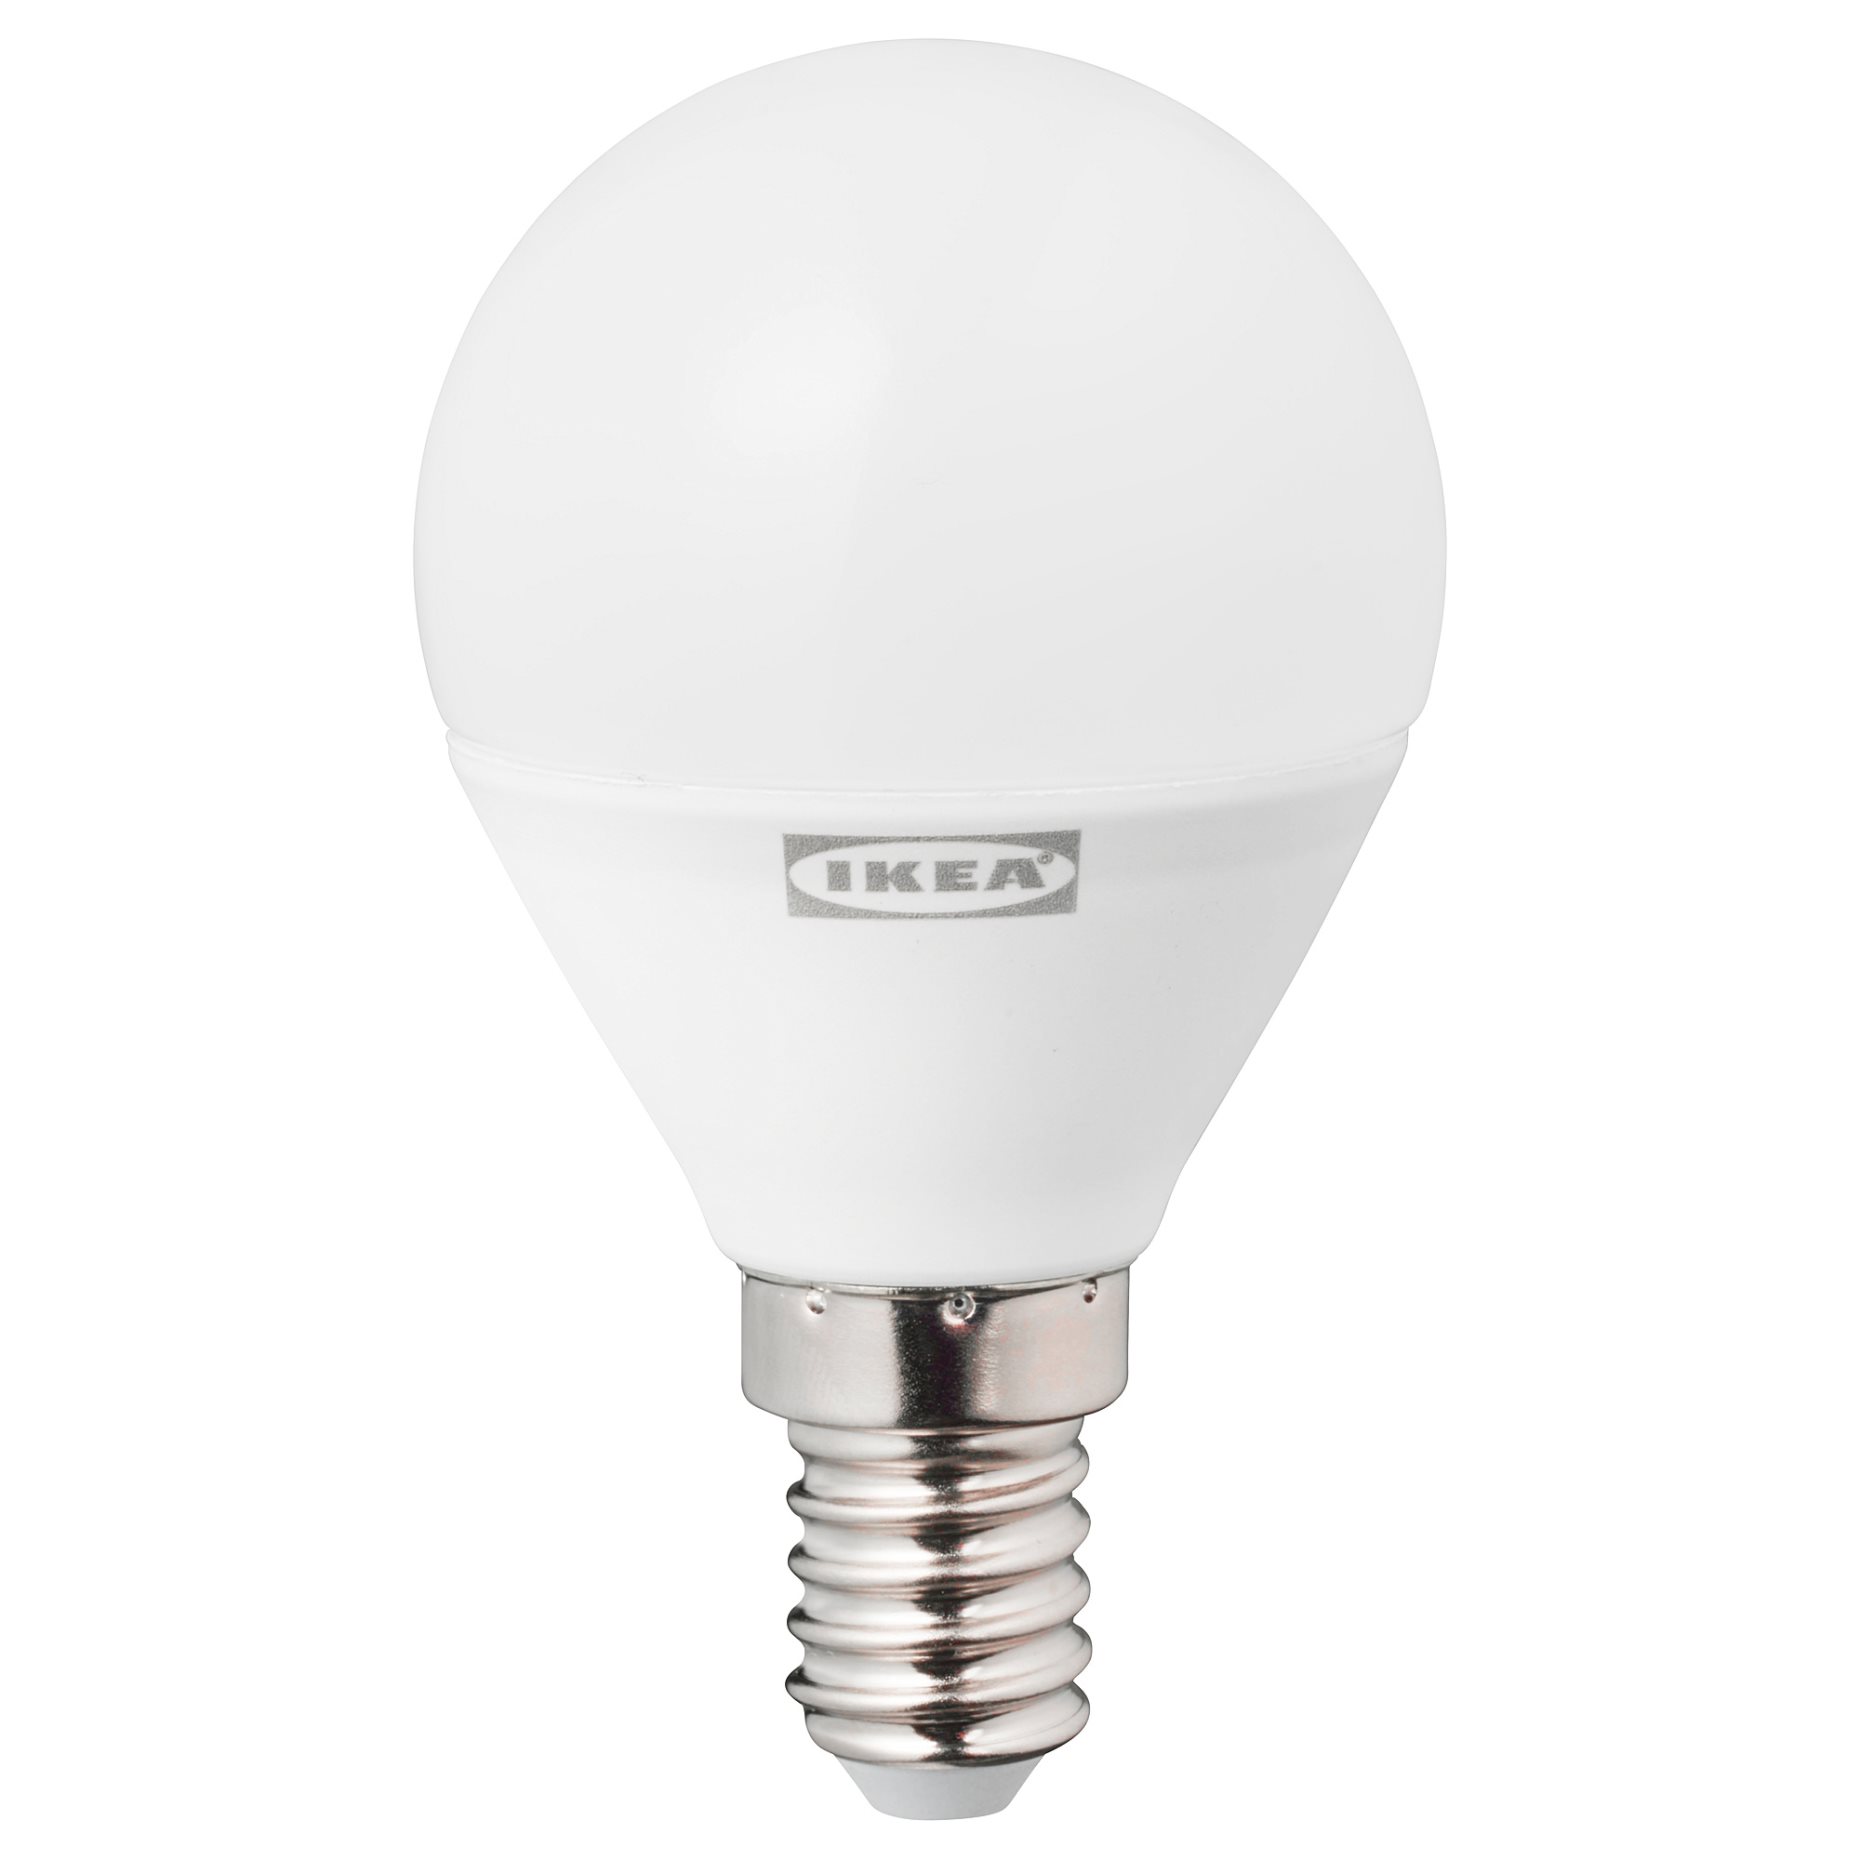 TRÅDFRI, λαμπτήρας LED E14 470 lumen/ασύρματης ρύθμισης λευκό φάσμα, 705.181.79